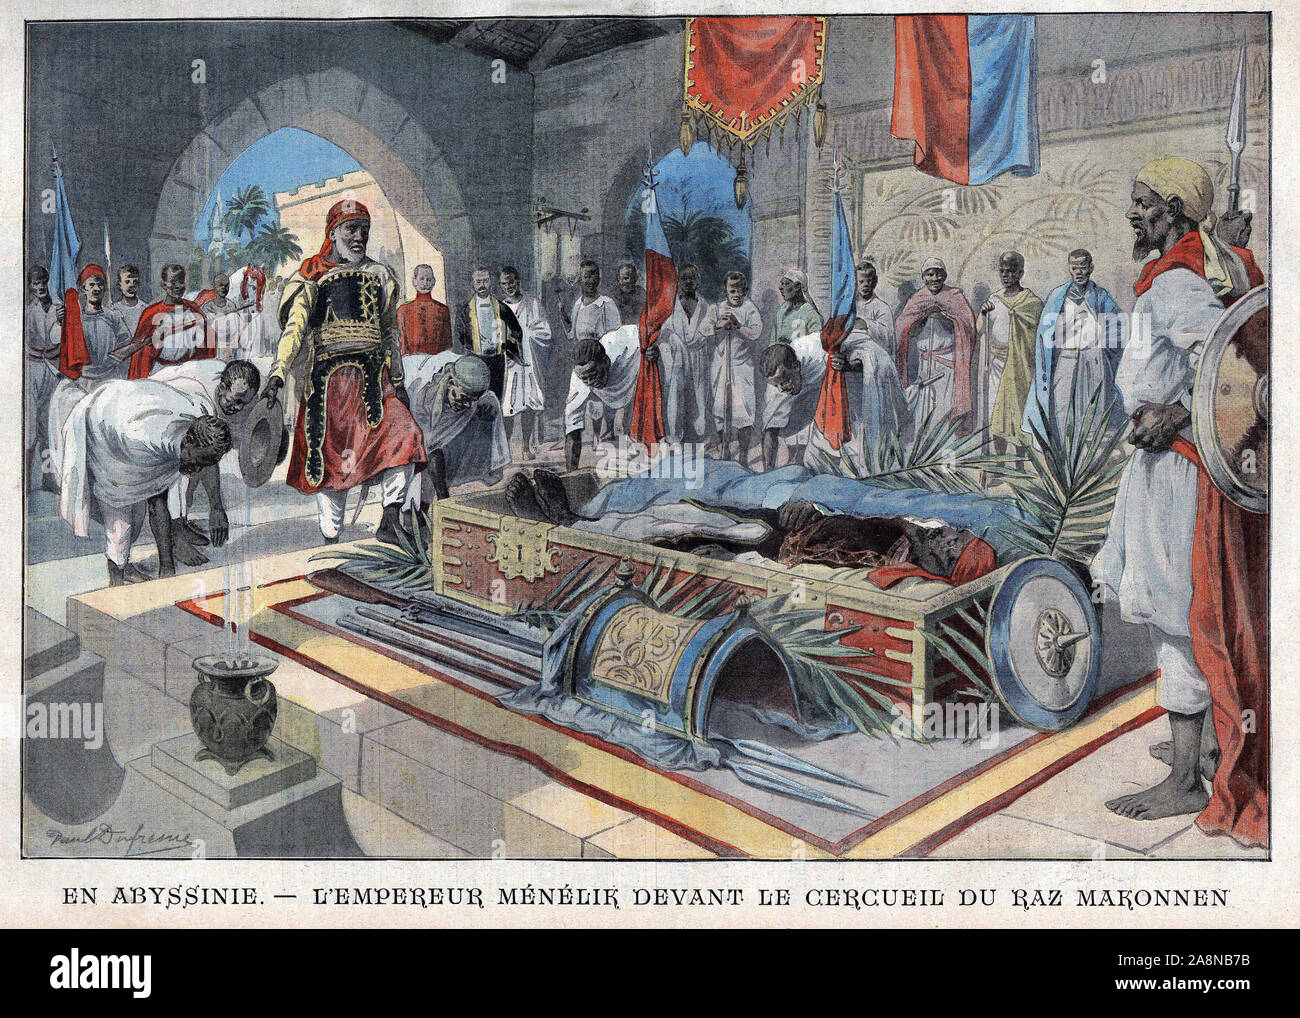 Hommage rendu par l'Empereur Menelik II d'Ethiopie un la mort de Ras Makonnen (Mekonnen Welde Mikael) (Abba Qagnew) (1852-1906), gouverneur de la provi Foto Stock